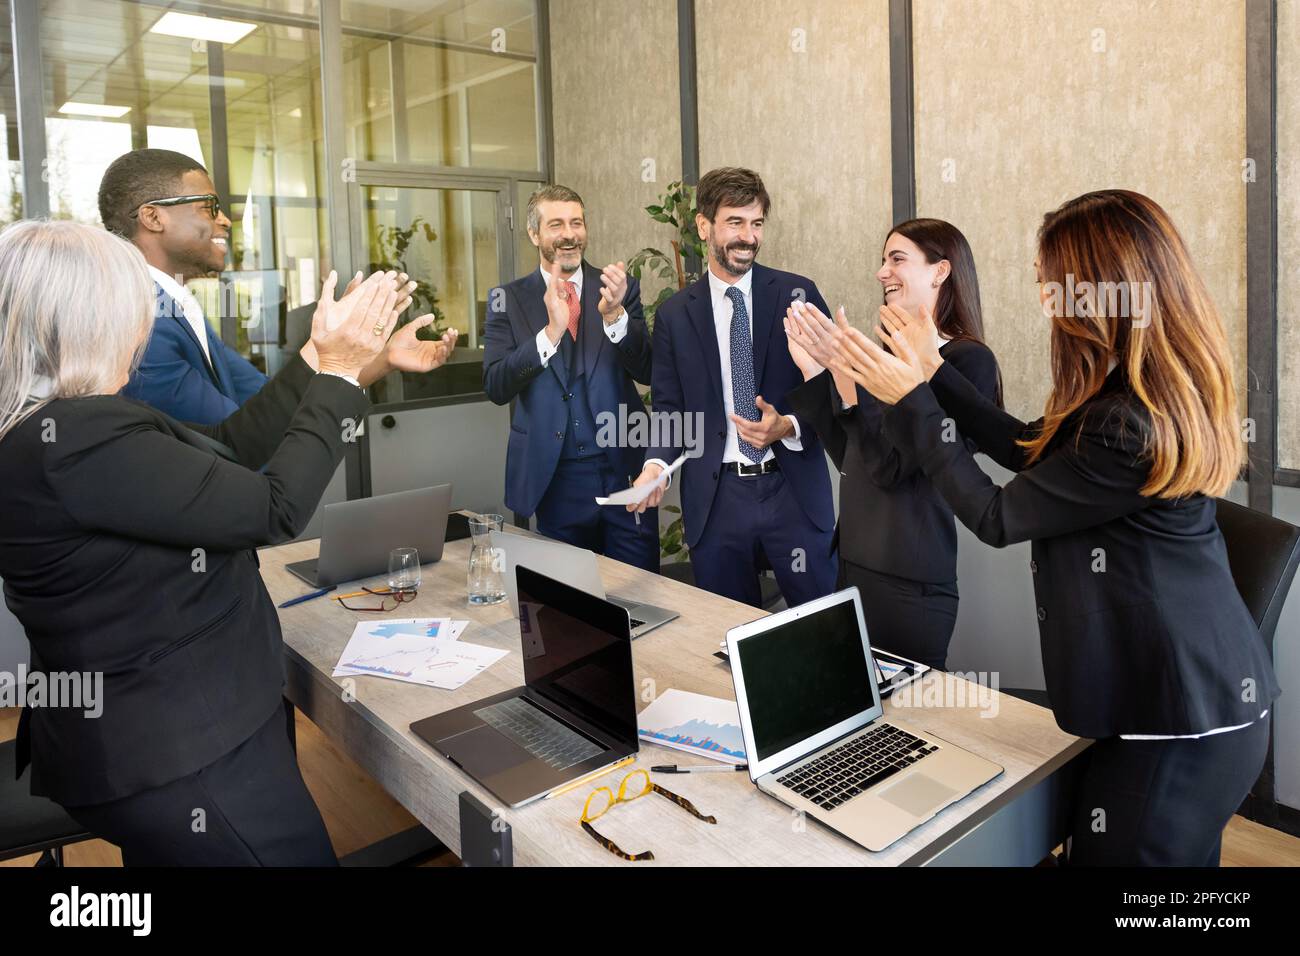 Une équipe d'hommes d'affaires multiraciaux vêtu de costumes de classe se réunissant à table avec des ordinateurs portables dans la salle de conférence et applaudissant après une réunion réussie Banque D'Images